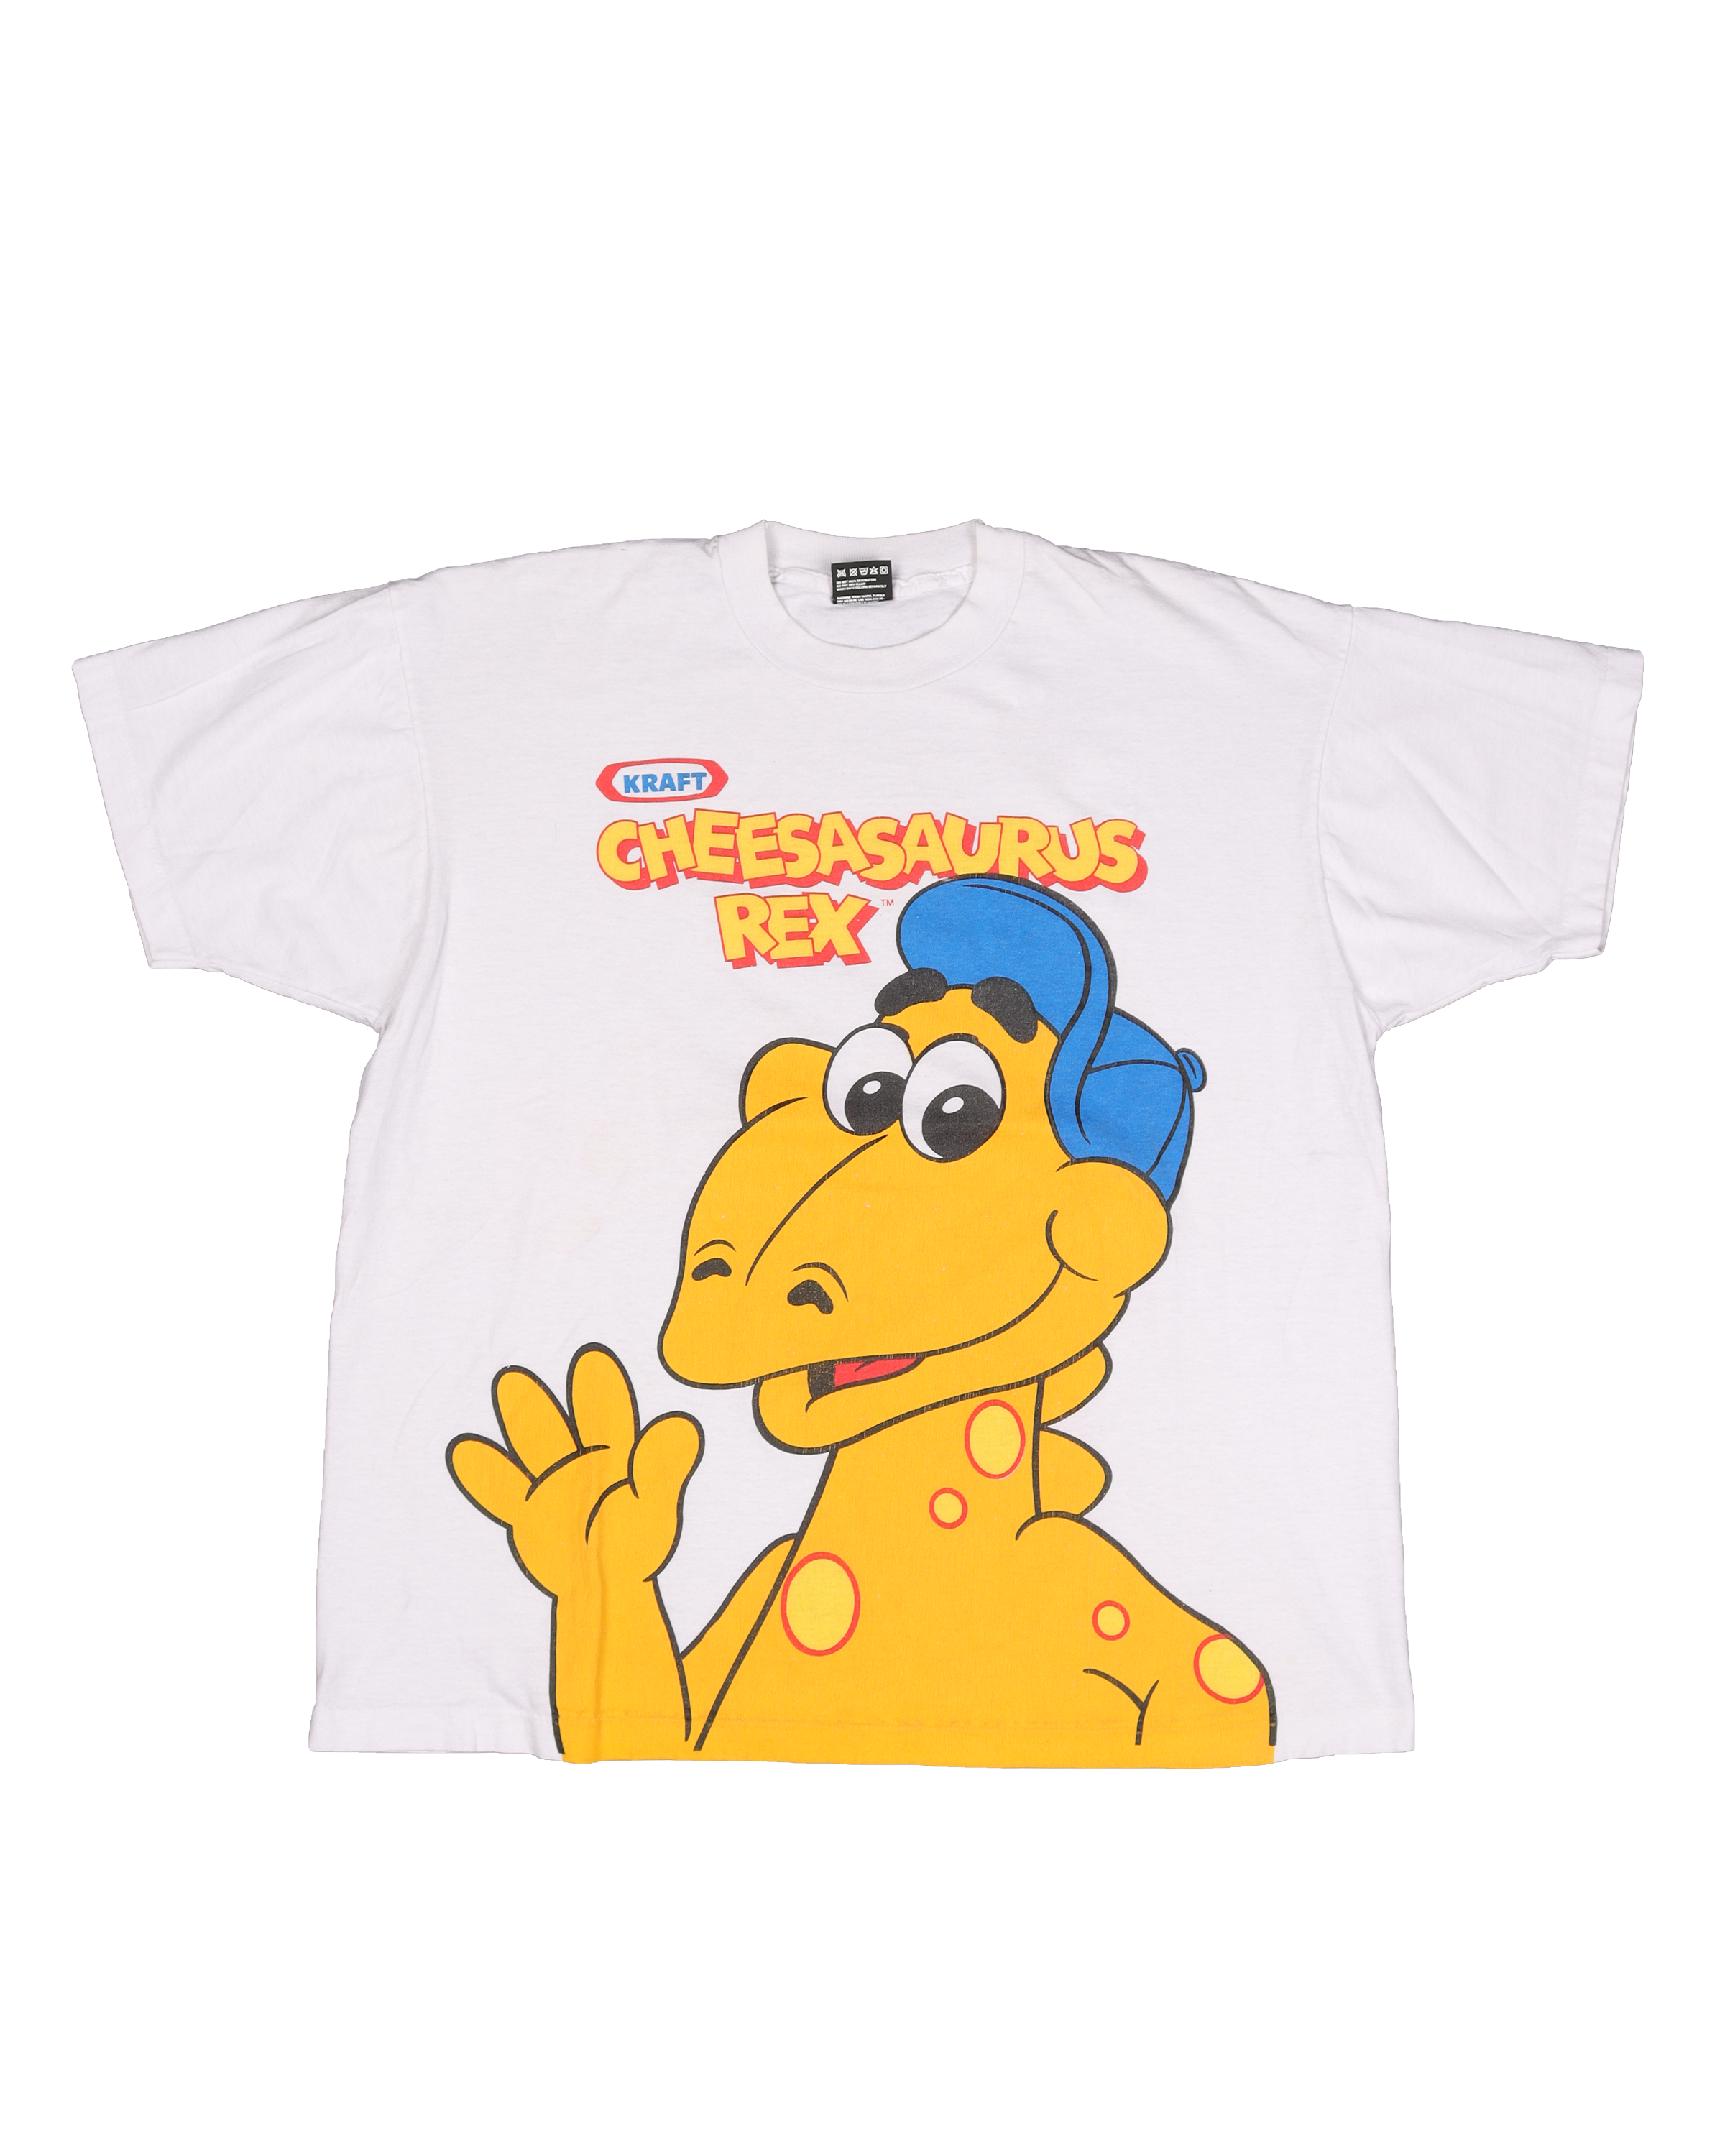 Kraft "Cheesasaurus Rex" T-Shirt